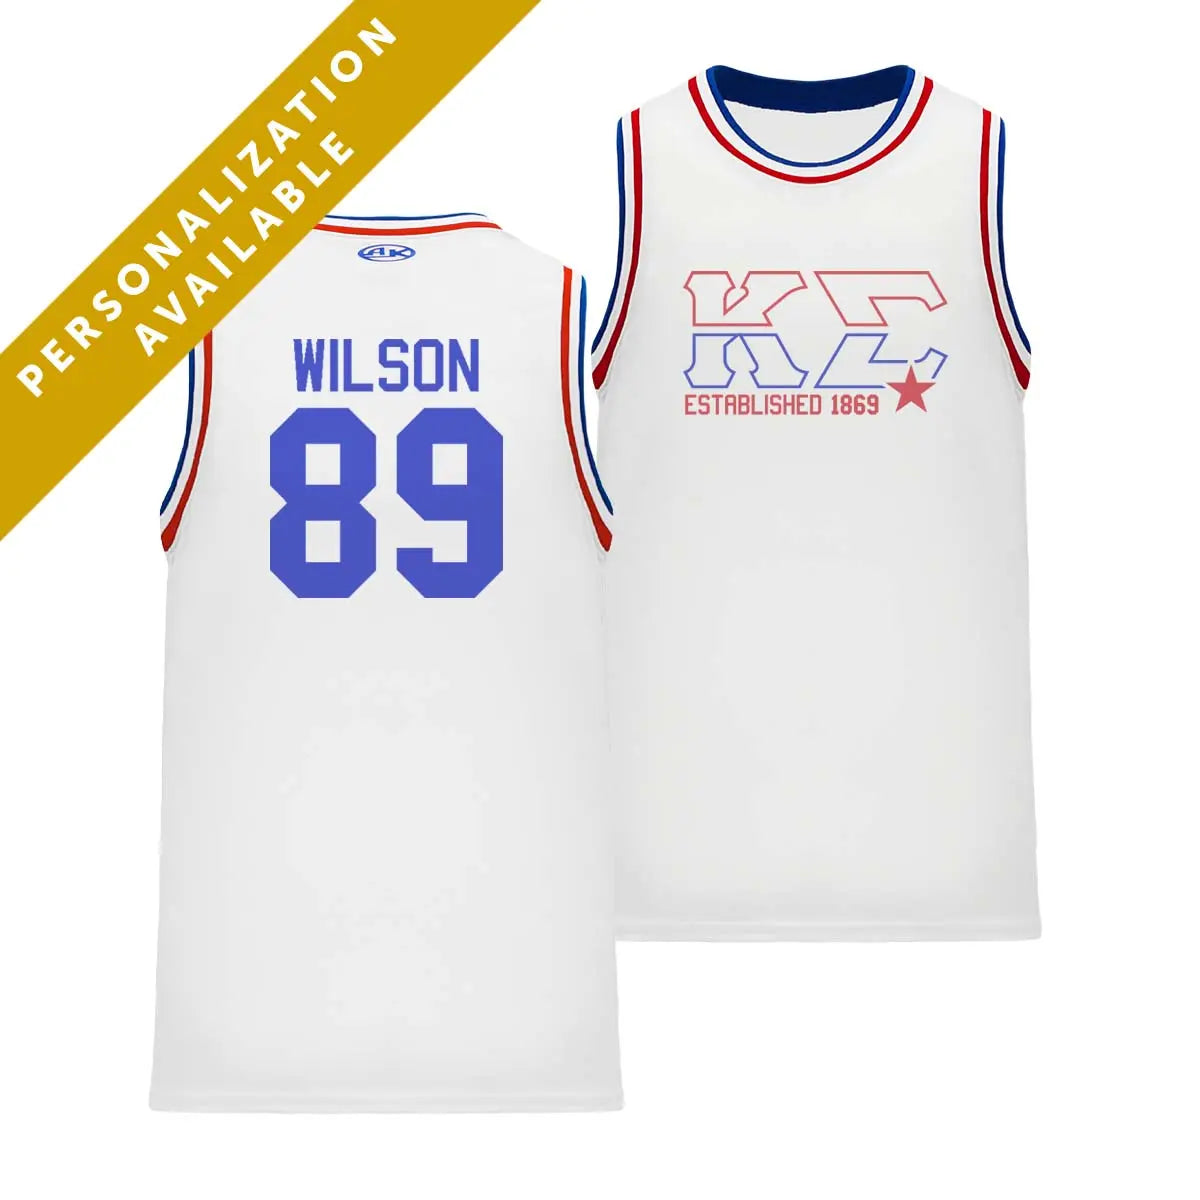 Kappa Sig Retro Block Basketball Jersey - Kappa Sigma Official Store